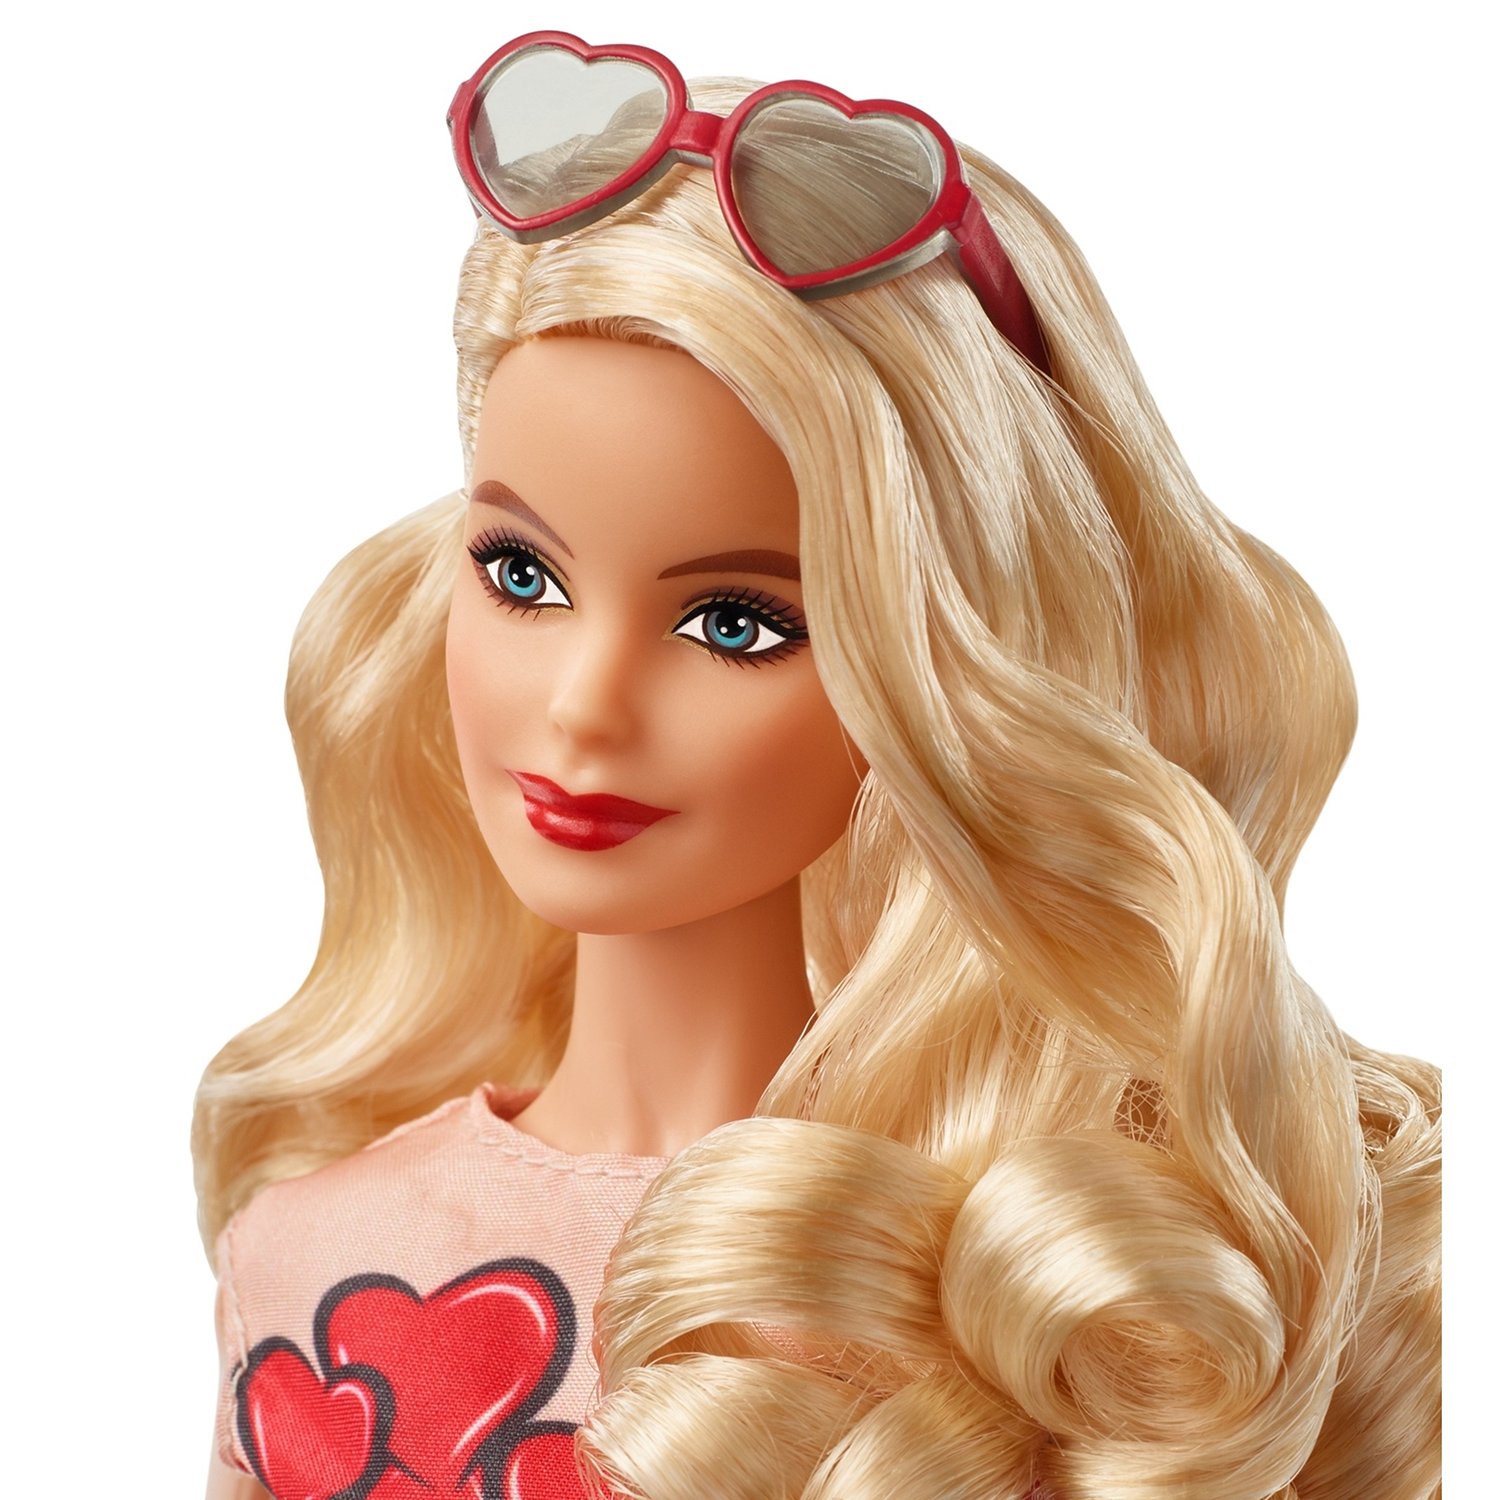 Коллекционная кукла Barbie® в красном платье  